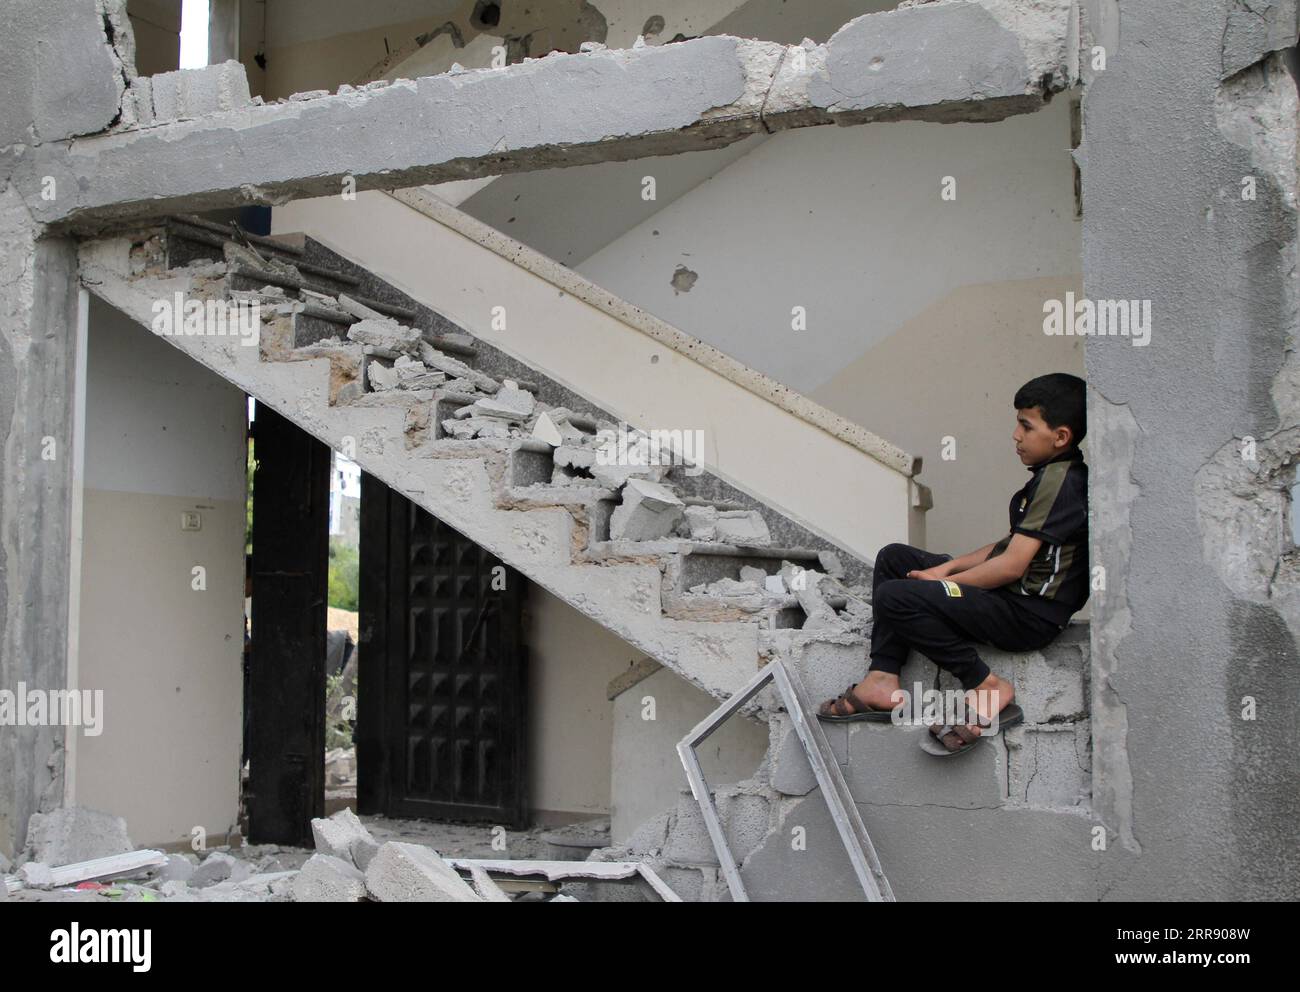 210521 -- GAZA, 21. Mai 2021 -- Ein palästinensisches Kind sitzt in seinem Haus, das nach dem Waffenstillstand zwischen Israel und der Hamas am 21. Mai 2021 in der Stadt Beit Lahia im nördlichen Gazastreifen zerstört wurde. Ein von Ägypten vermitteltes Waffenstillstandsabkommen zwischen Israel und der Hamas, das den Gazastreifen regelt, trat am frühen Freitag in Kraft und beendete das 11-tägige Blutvergießen. Die Kämpfe zwischen Israel und den von der Hamas geführten militanten Gruppen im Gazastreifen haben mehr als 100 Menschen getötet und Zehntausende von Menschen vertrieben. Foto von /Xinhua MIDEAST-GAZA-WAFFENSTILLSTAND RizekxAbdeljawad PUBLICATIONxNOTx Stockfoto